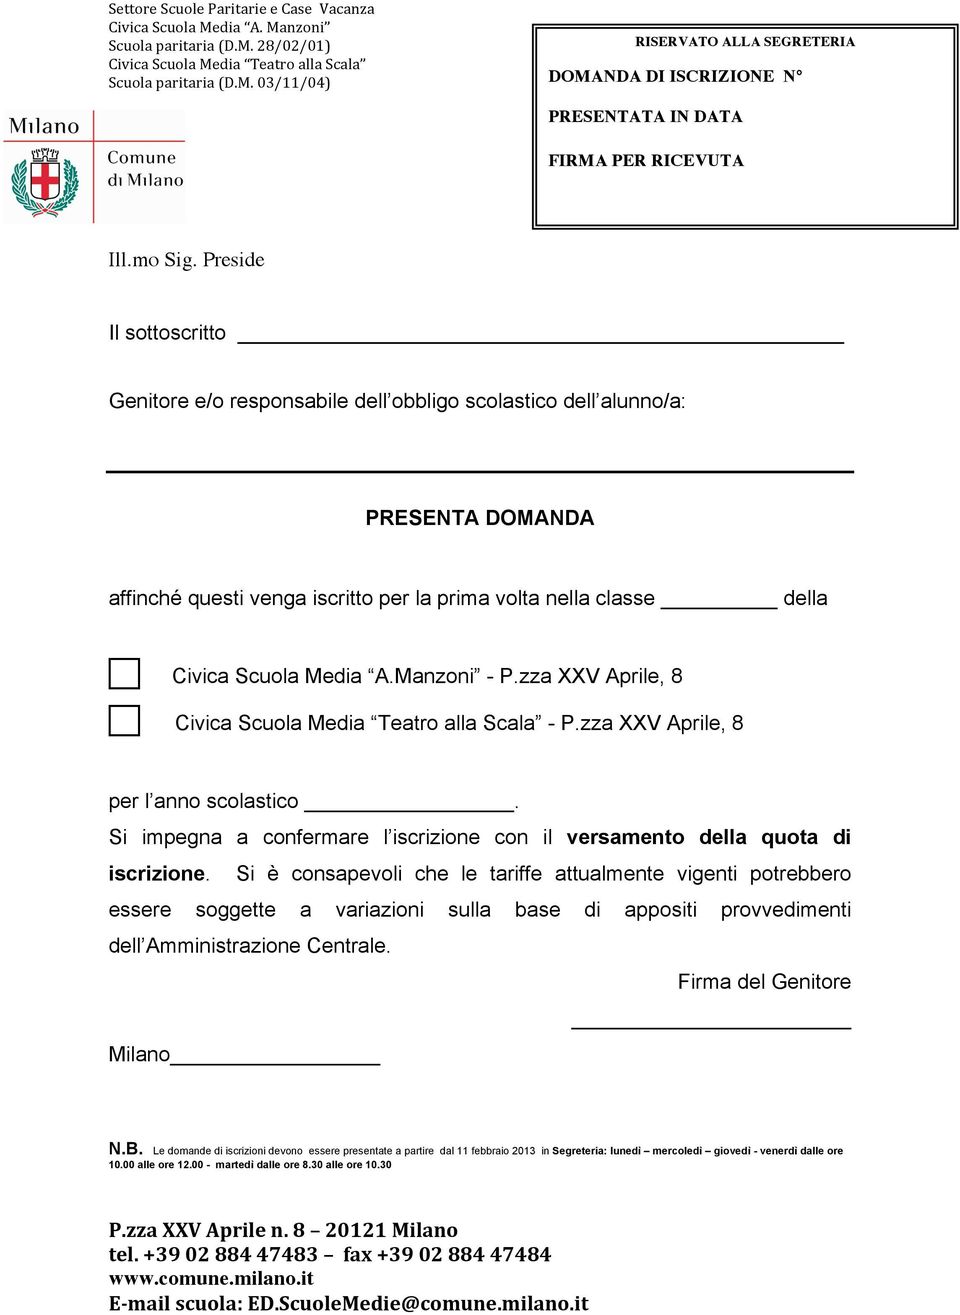 Manzoni - P.zza XXV Aprile, 8 Civica Scuola Media Teatro alla Scala - P.zza XXV Aprile, 8 per l anno scolastico. Si impegna a confermare l iscrizione con il versamento della quota di iscrizione.